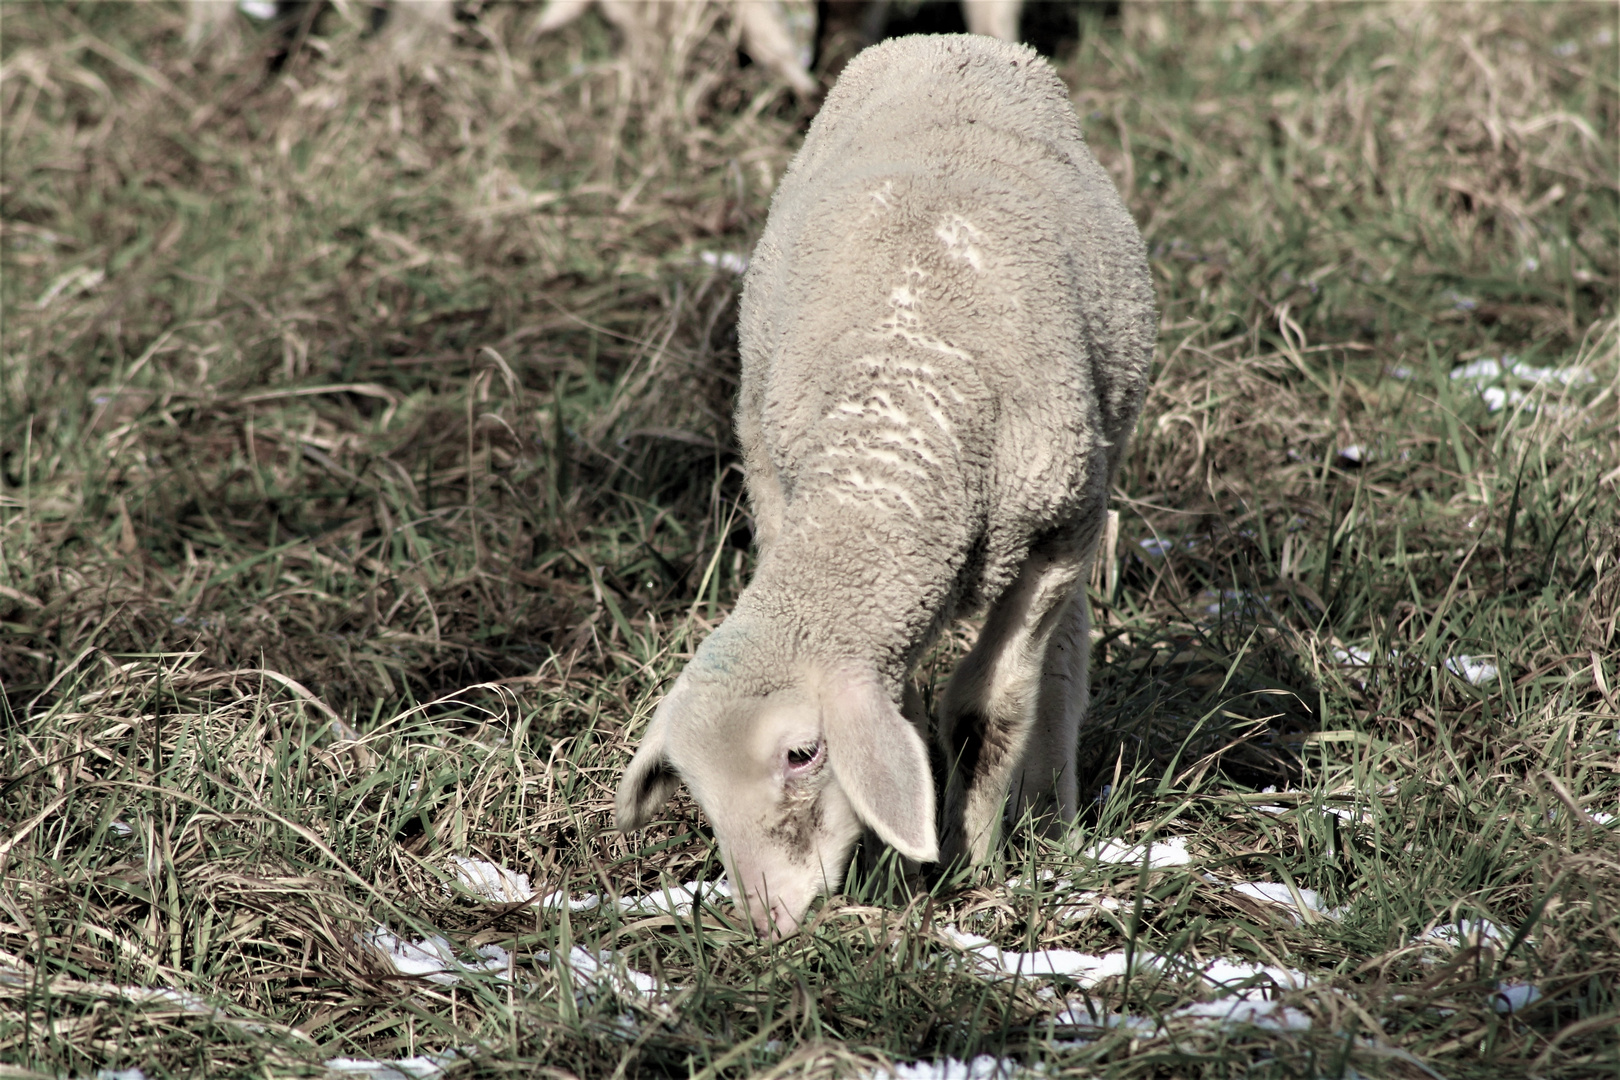 das kleine Schaf bemerkte mich  kurz ,